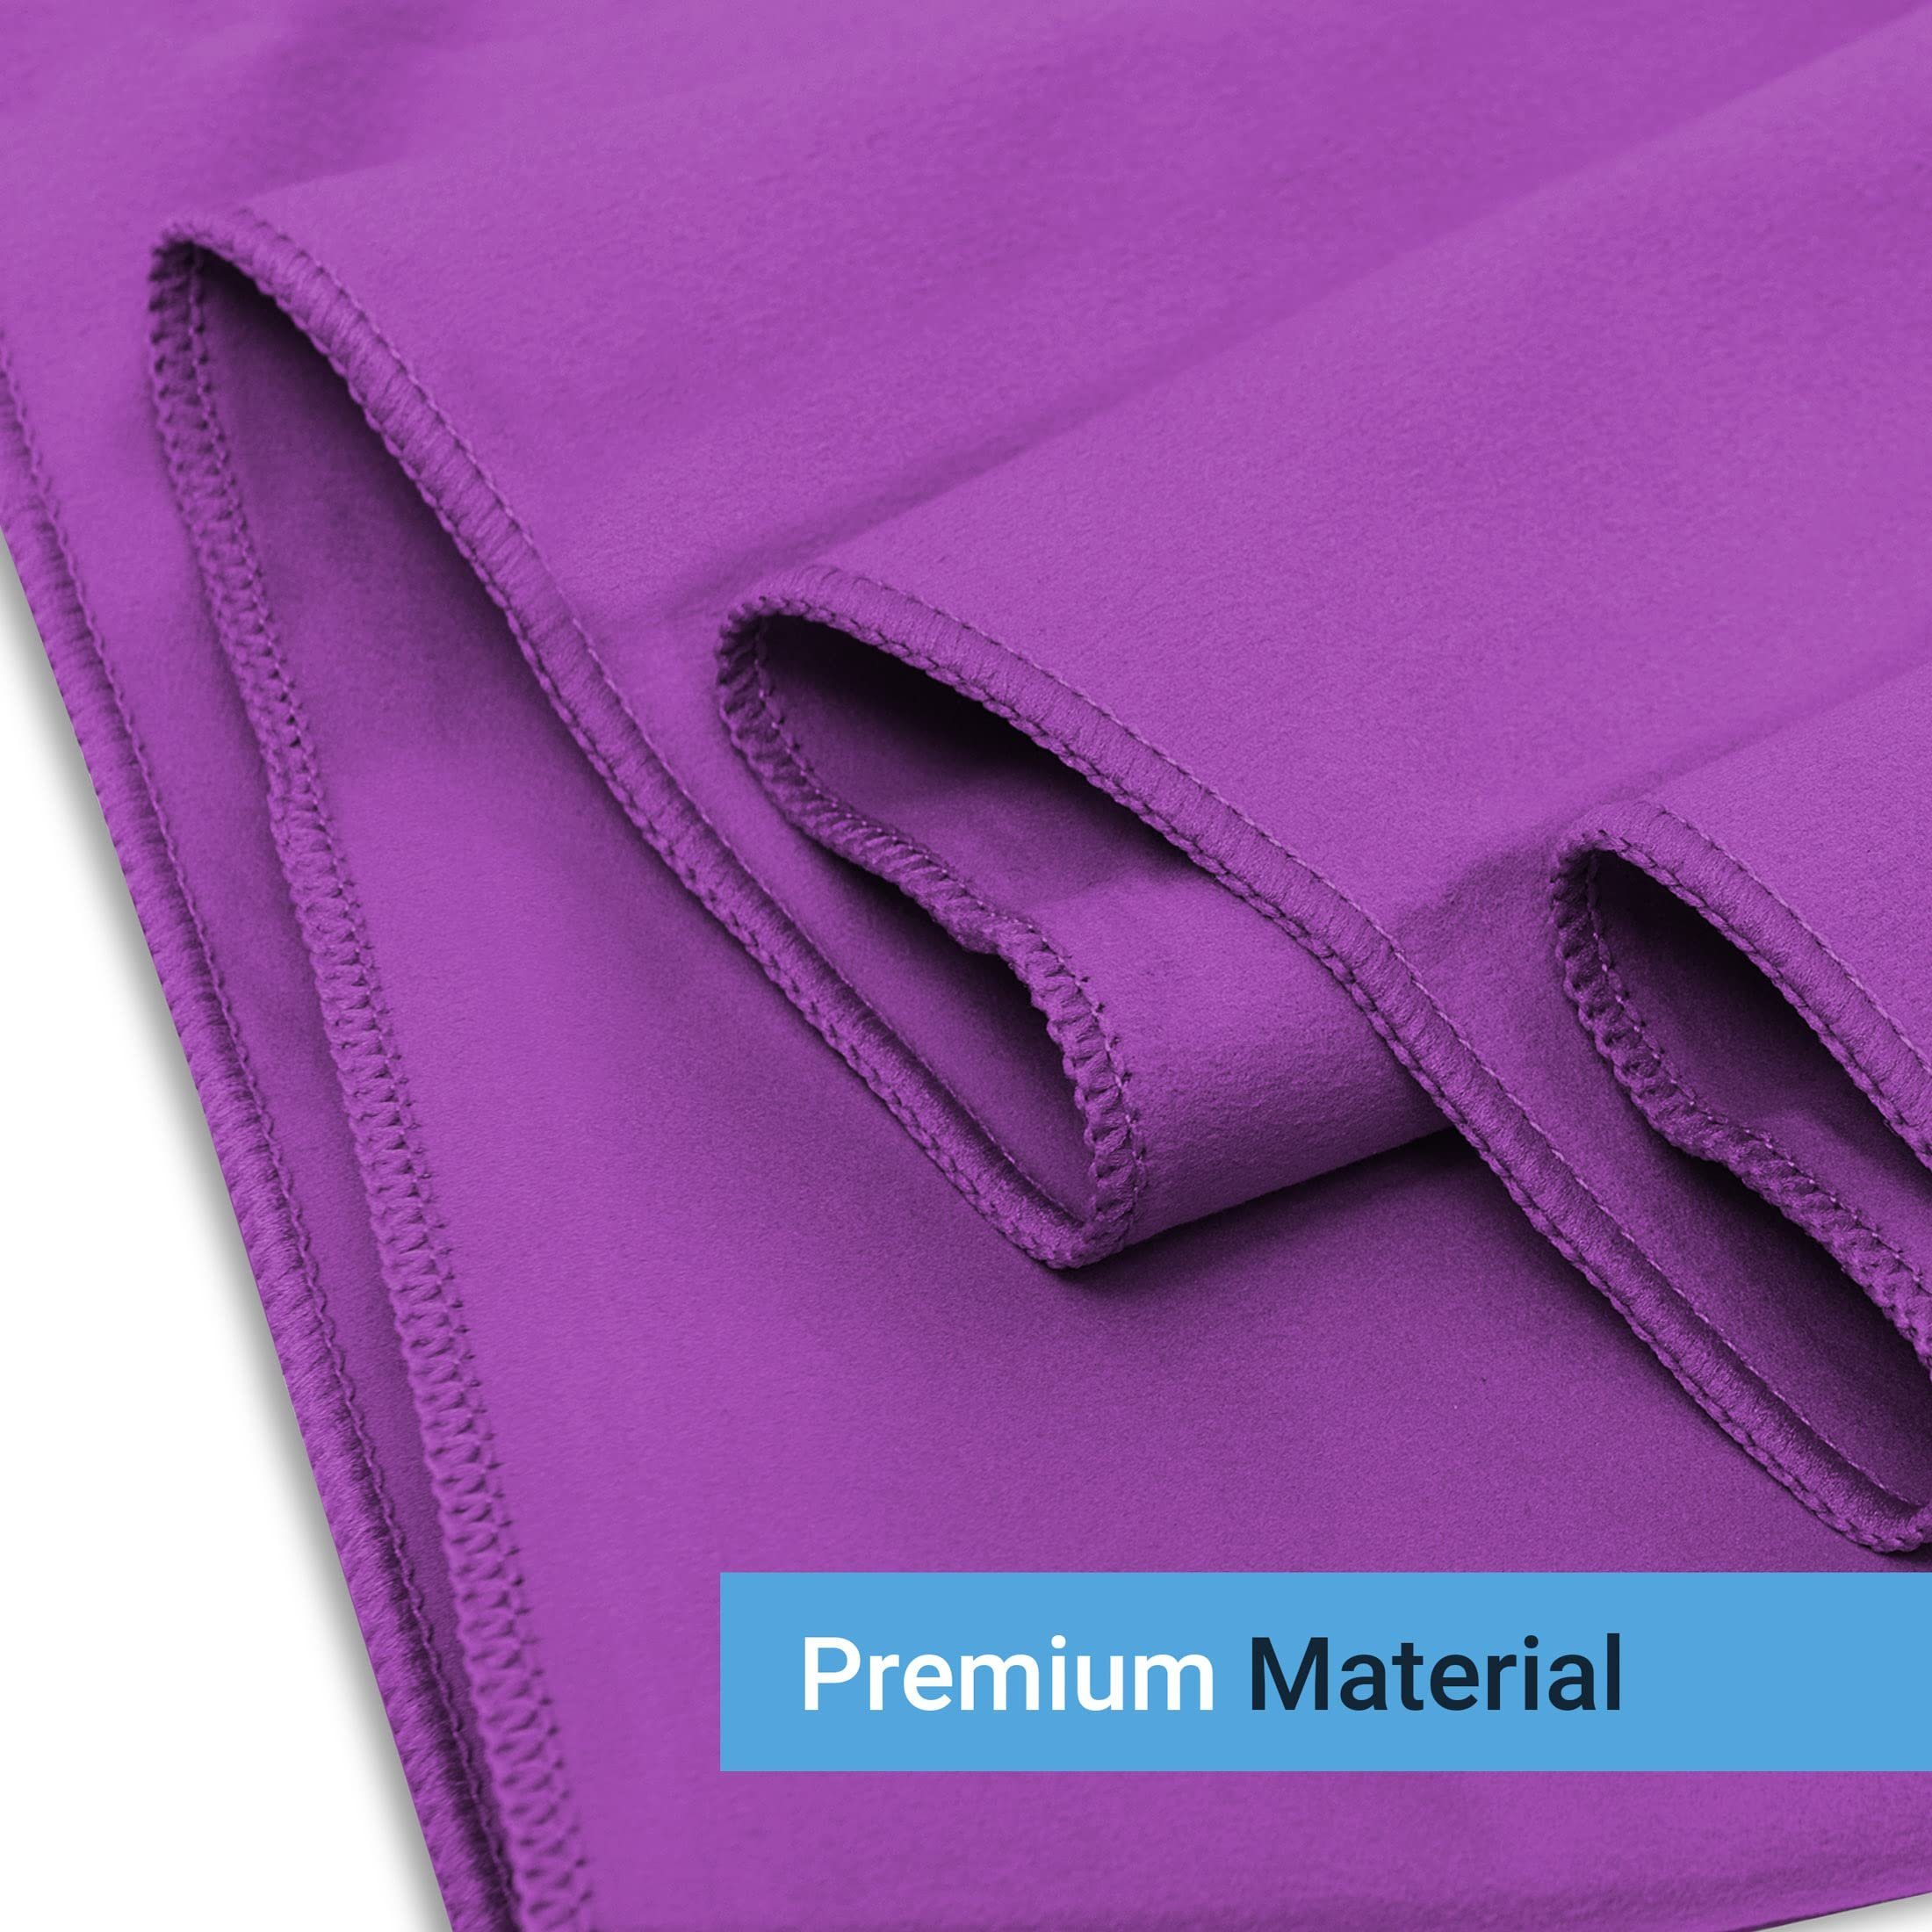 Purple Kompakt, MNT10 perfekt Microfaser Handtuch eignen Case - Ultra Sporthandtuch Handtücher Sich Mit als Mikrofaser Sporthandtuch Leicht,